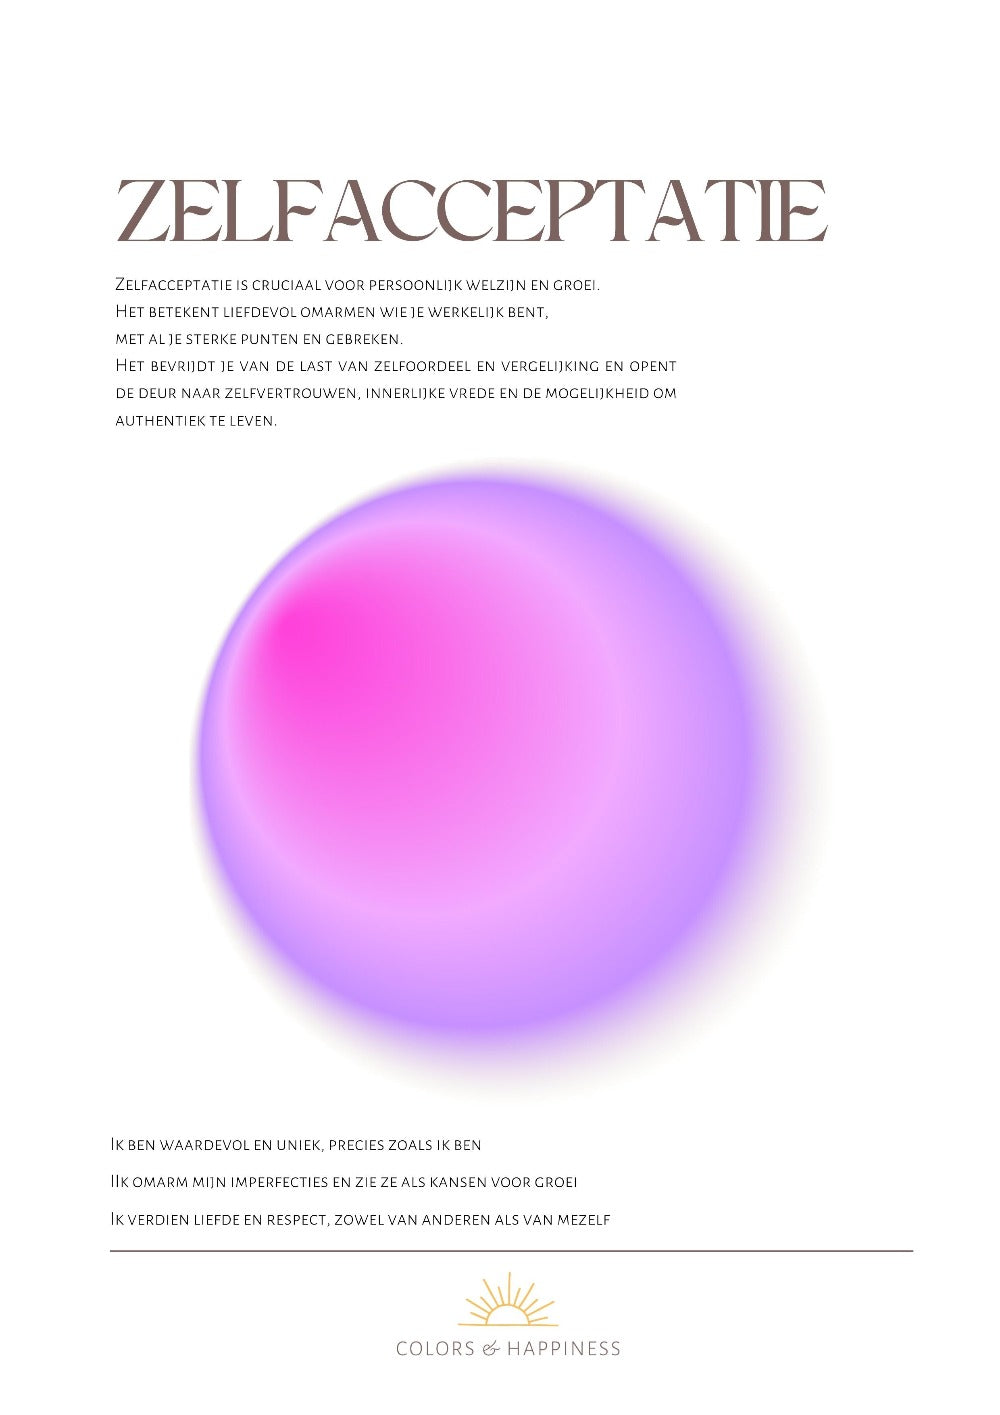 Stijlvolle poster met als thema zelfacceptatie, digitale download voor een bewuster leven